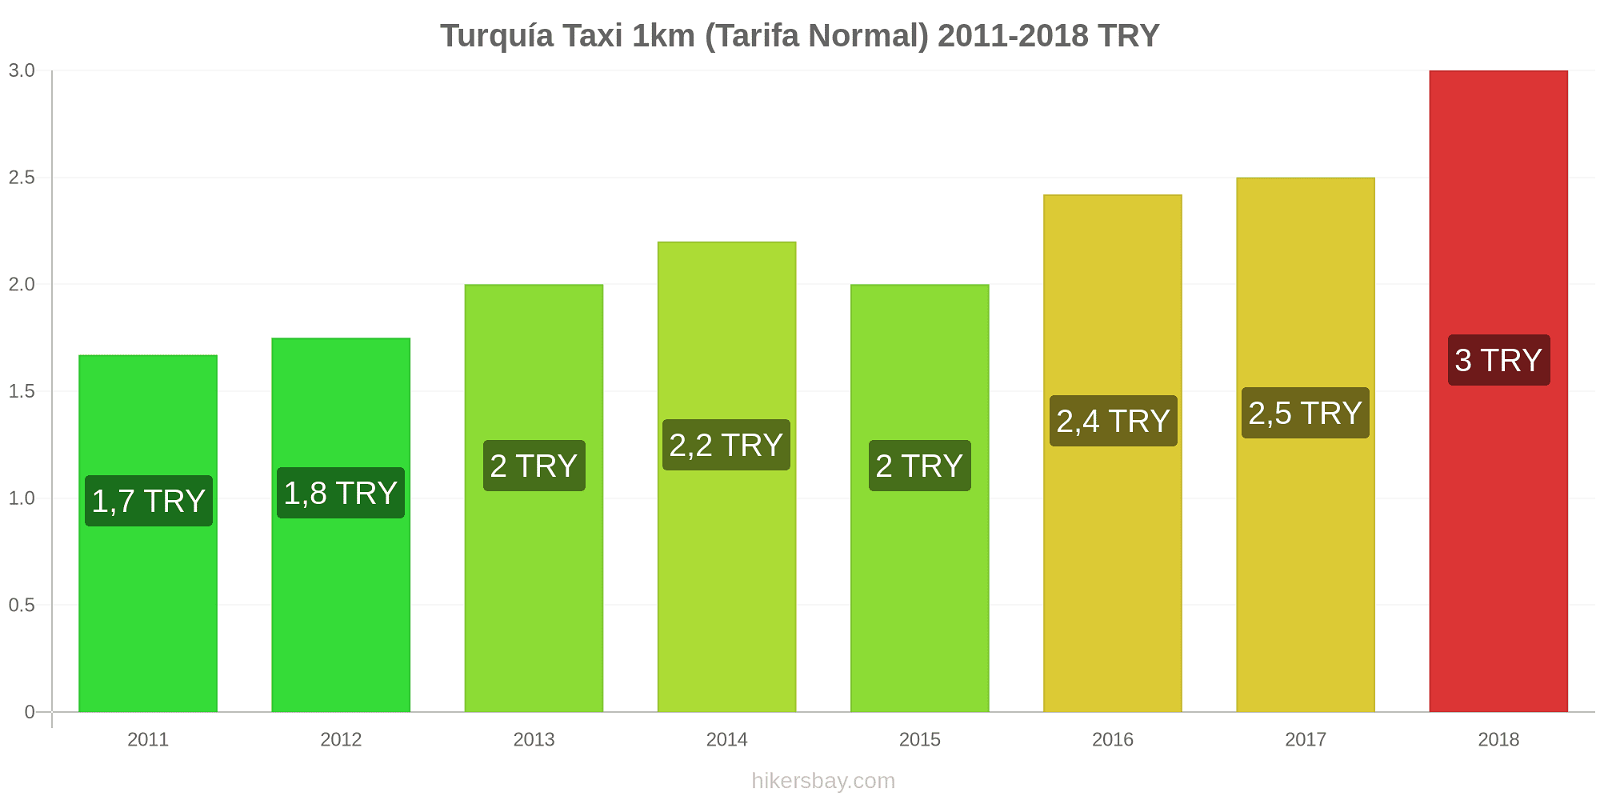 Turquía cambios de precios Taxi 1km (tarifa normal) hikersbay.com